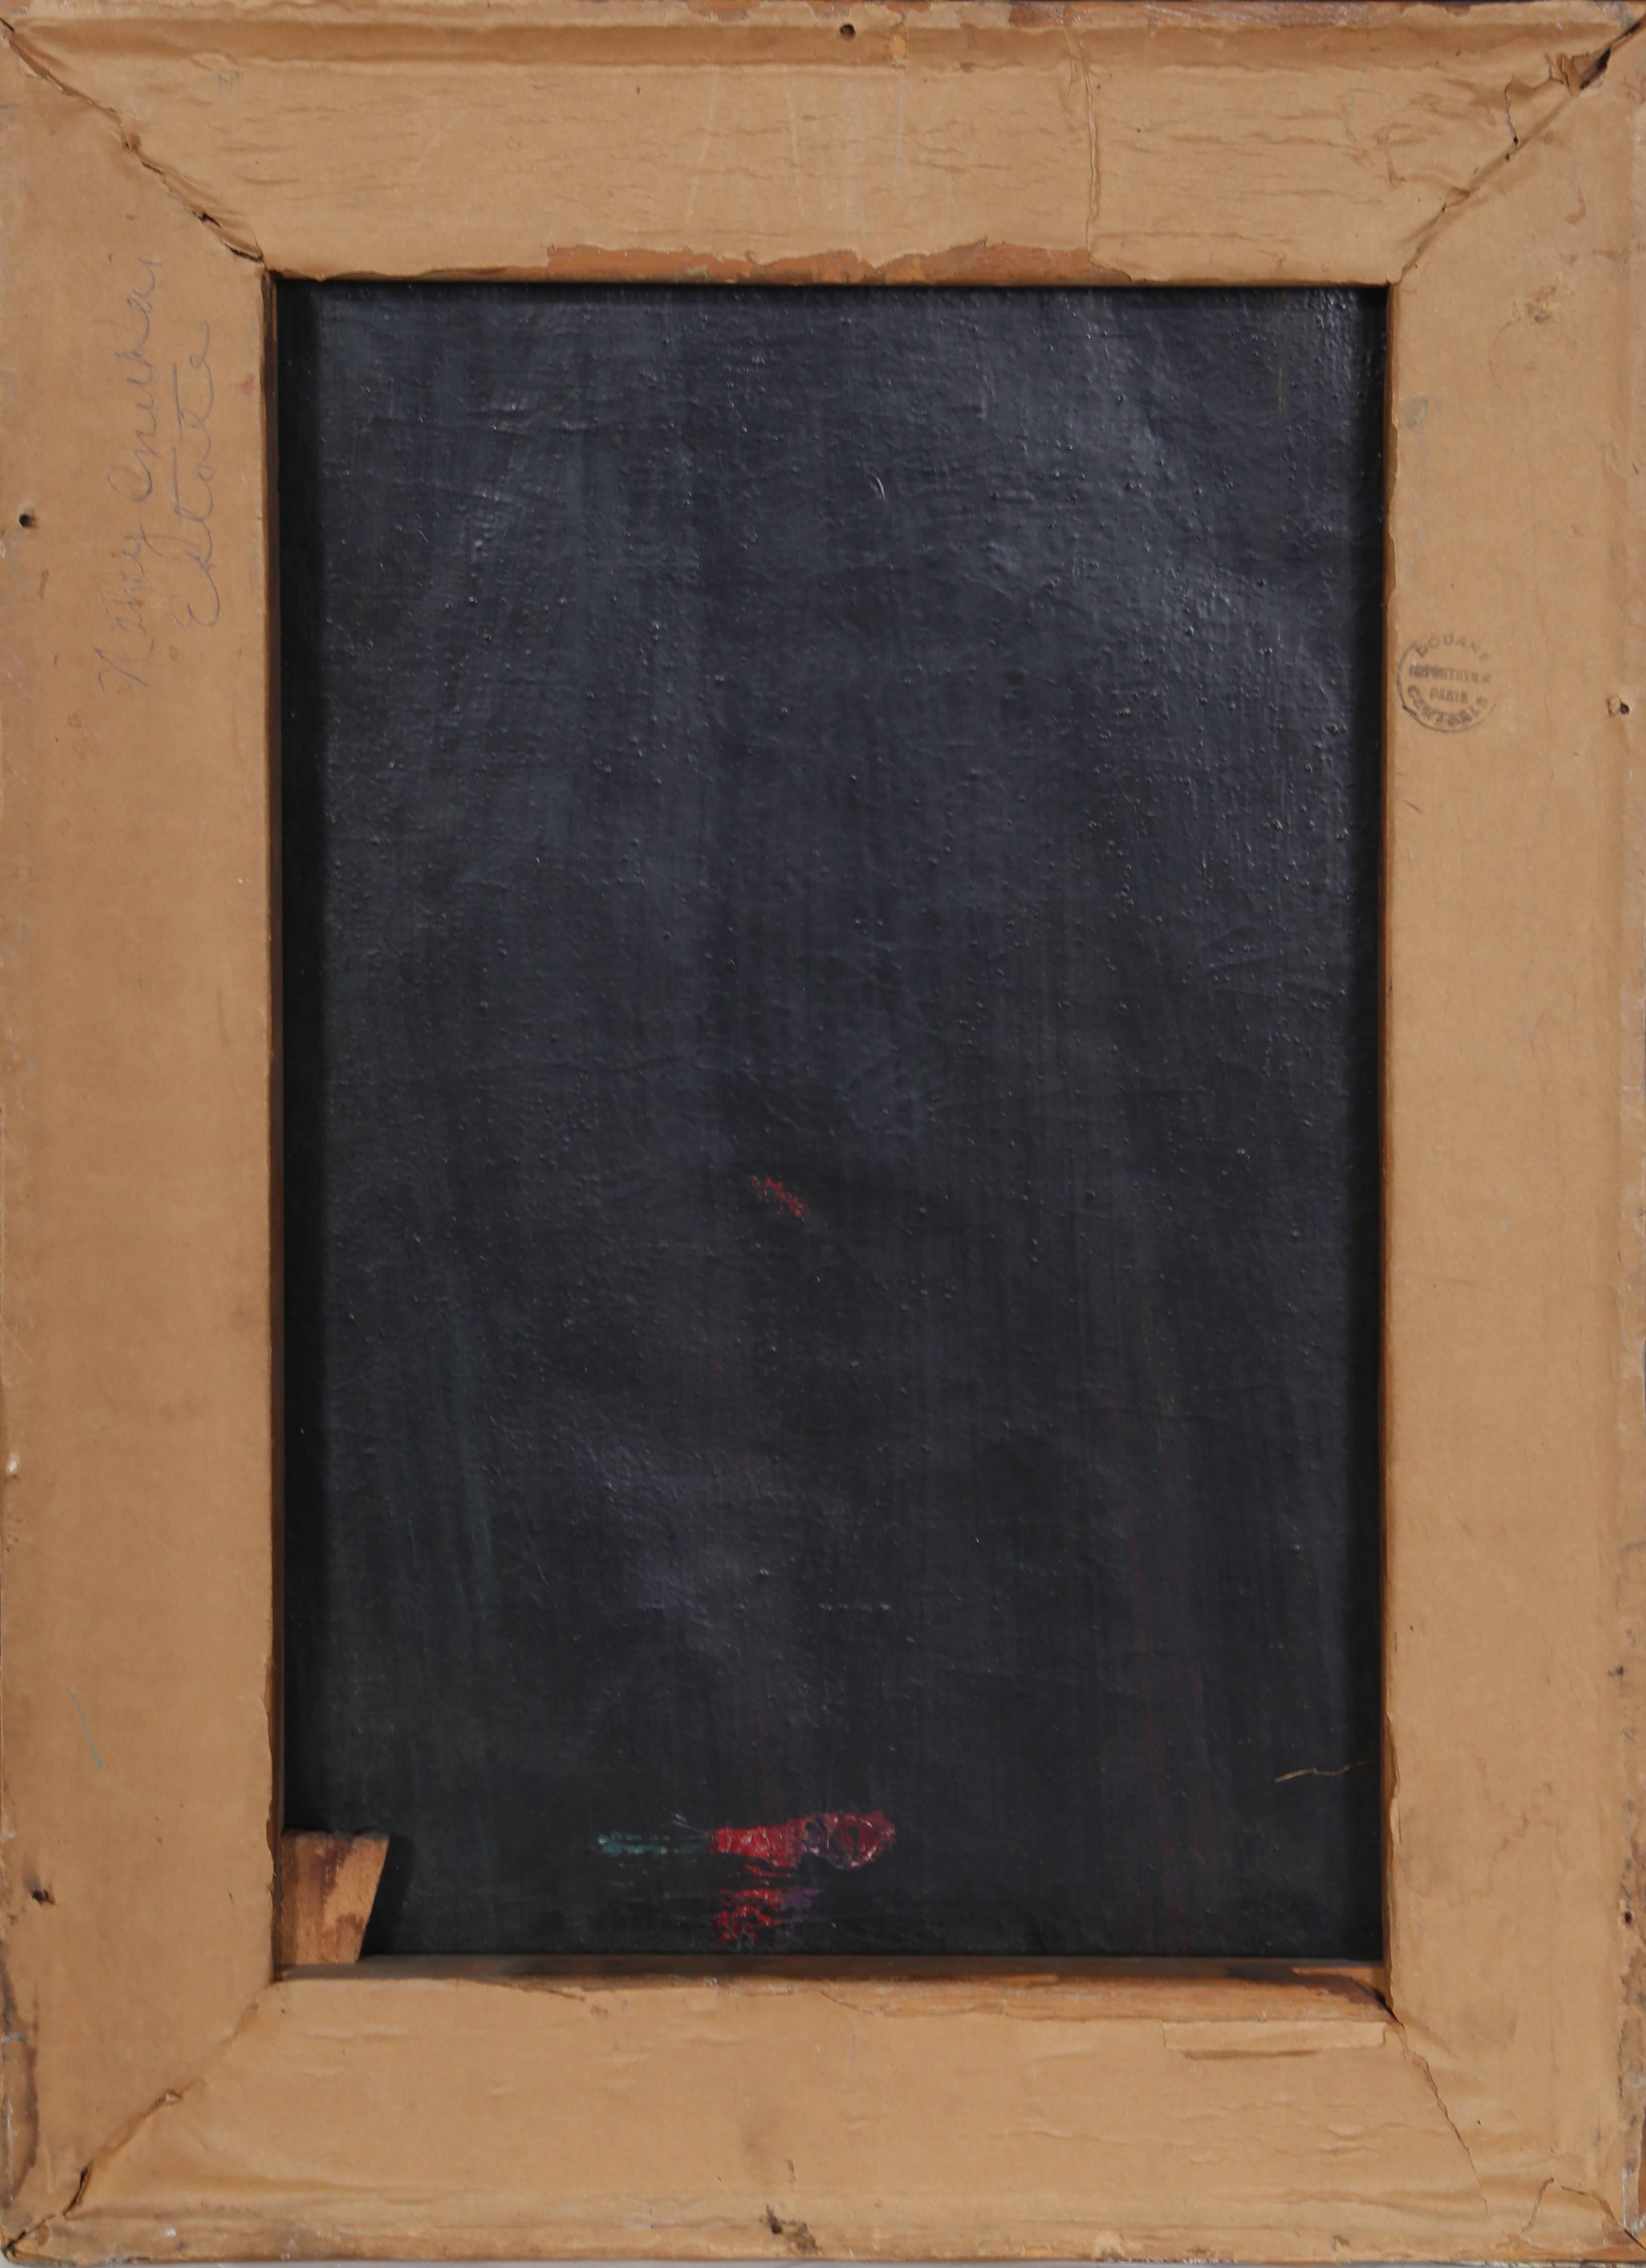 Drei Akte, modernes Gemälde von Inukai 1938 (Schwarz), Nude Painting, von Kyohei Inukai